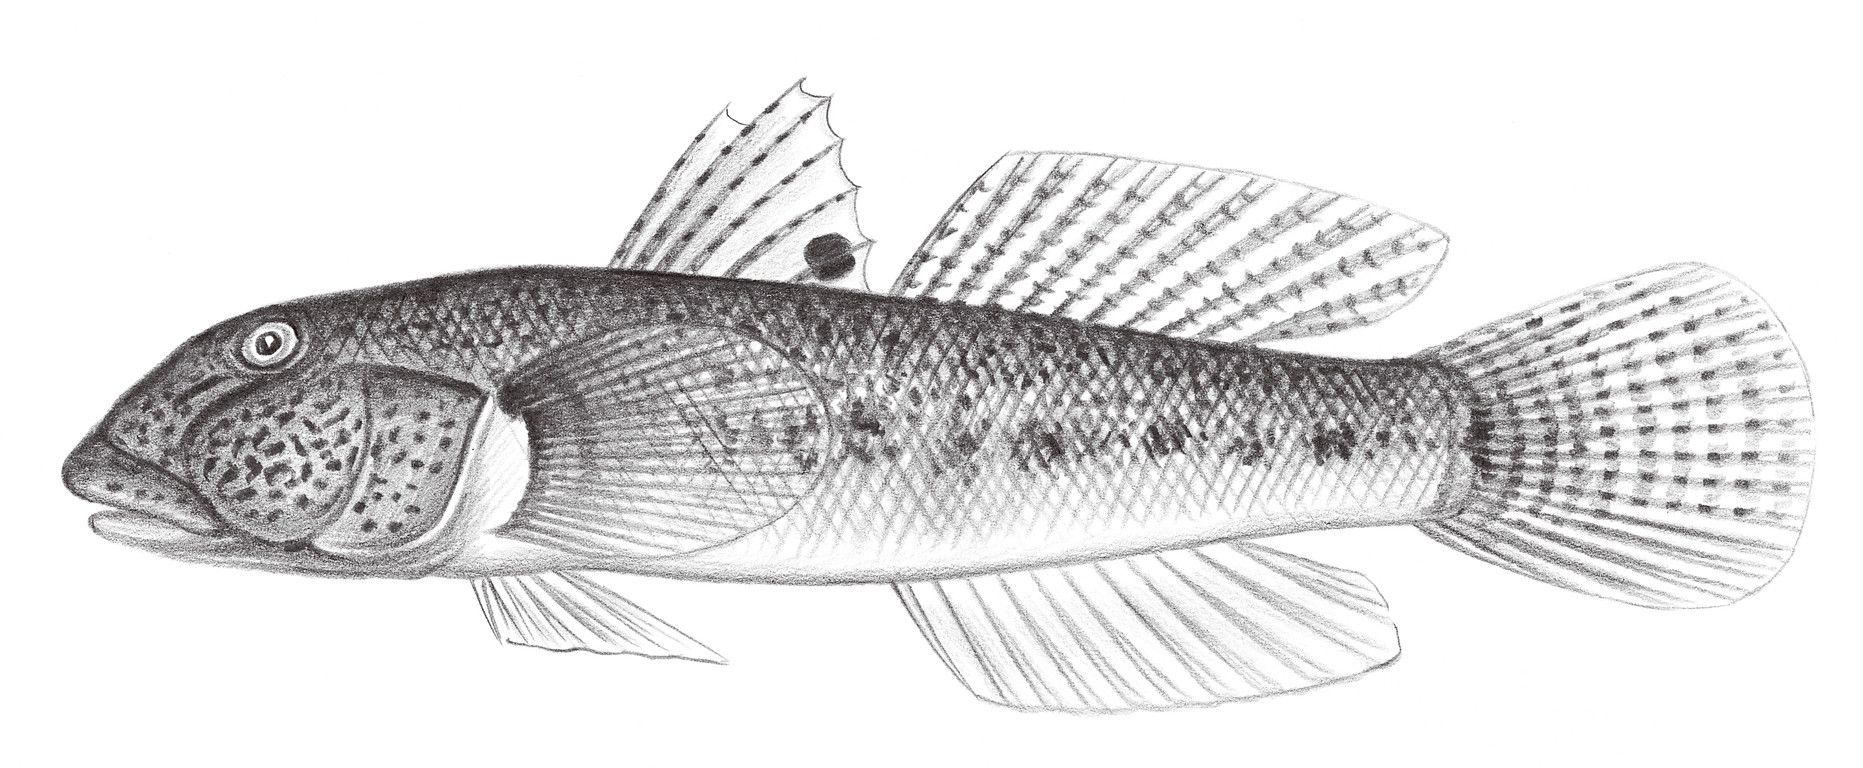 2216.	眼斑厚唇鰕虎 Awaous ocellaris (Broussonet, 1782)